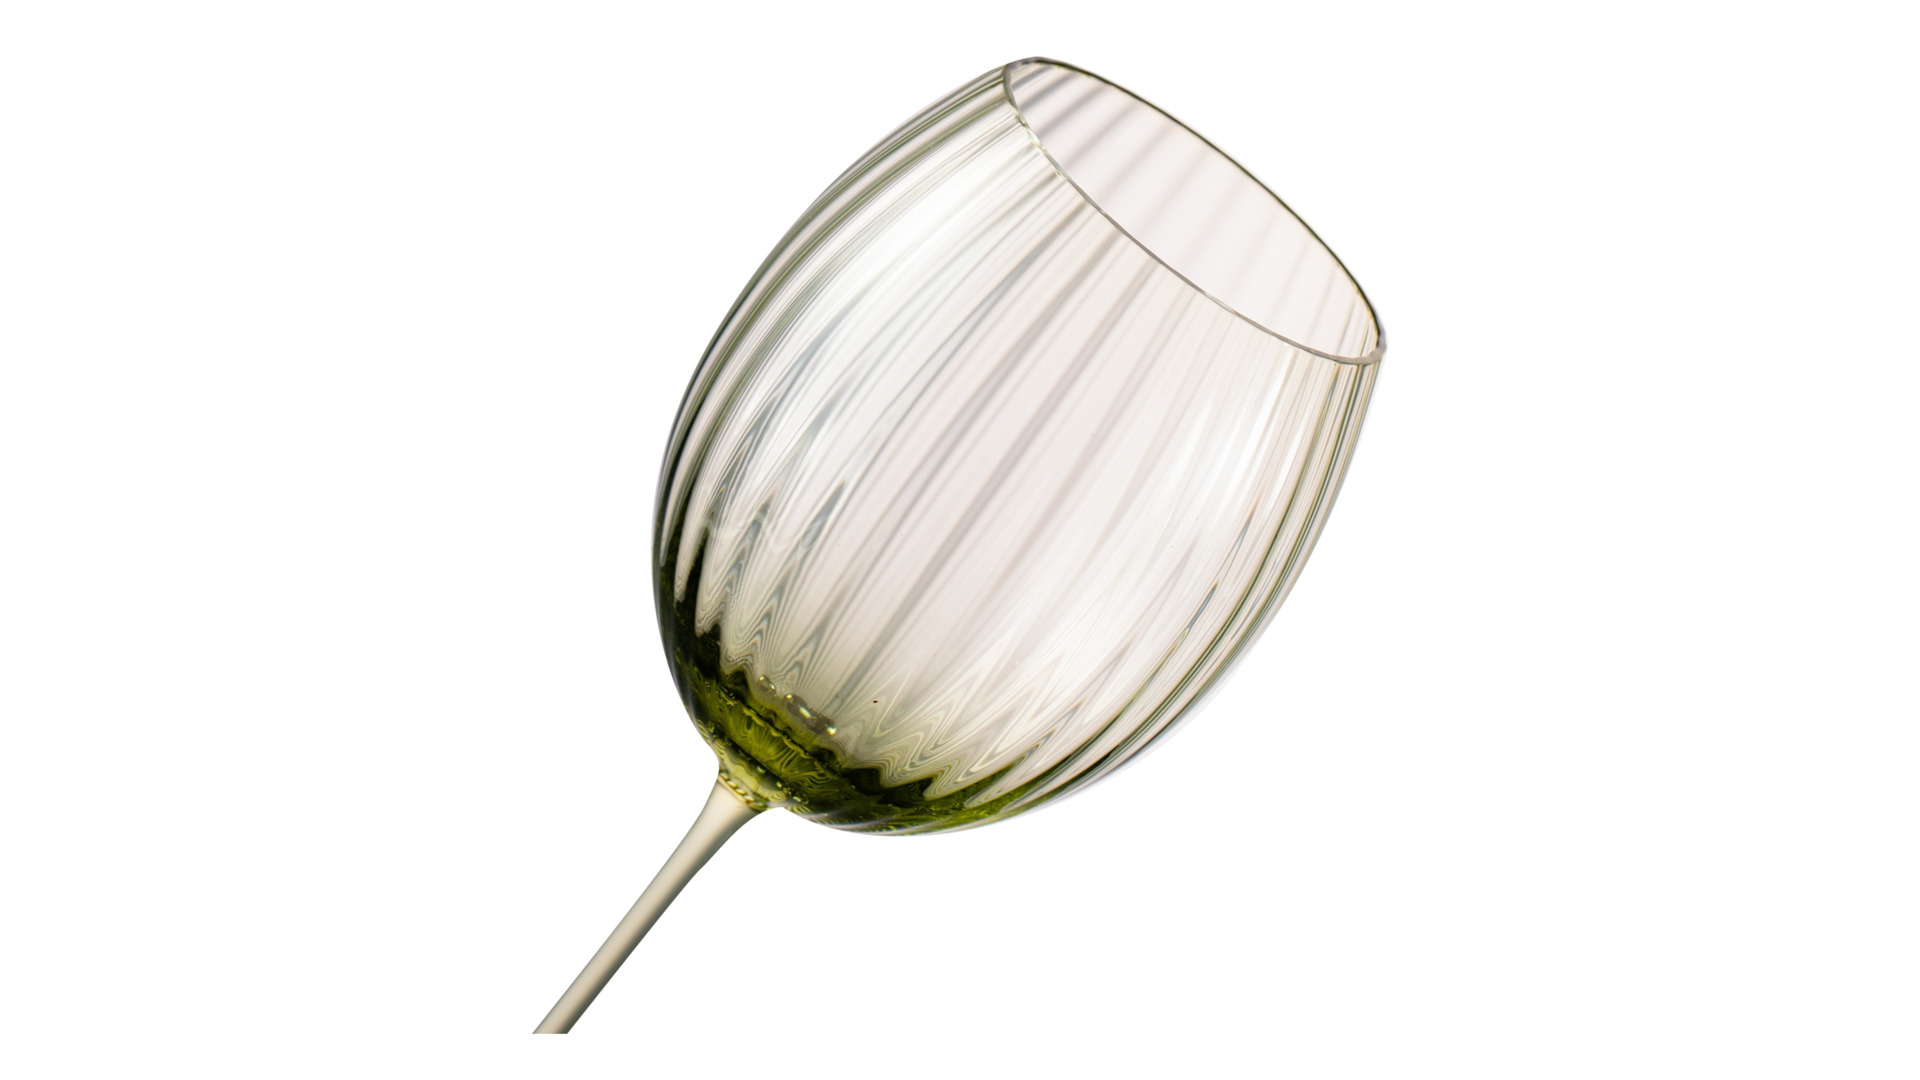 Набор бокалов для белого вина Anna Von Lipa Лион 380 мл, 2 шт, стекло хрустальное, зеленый